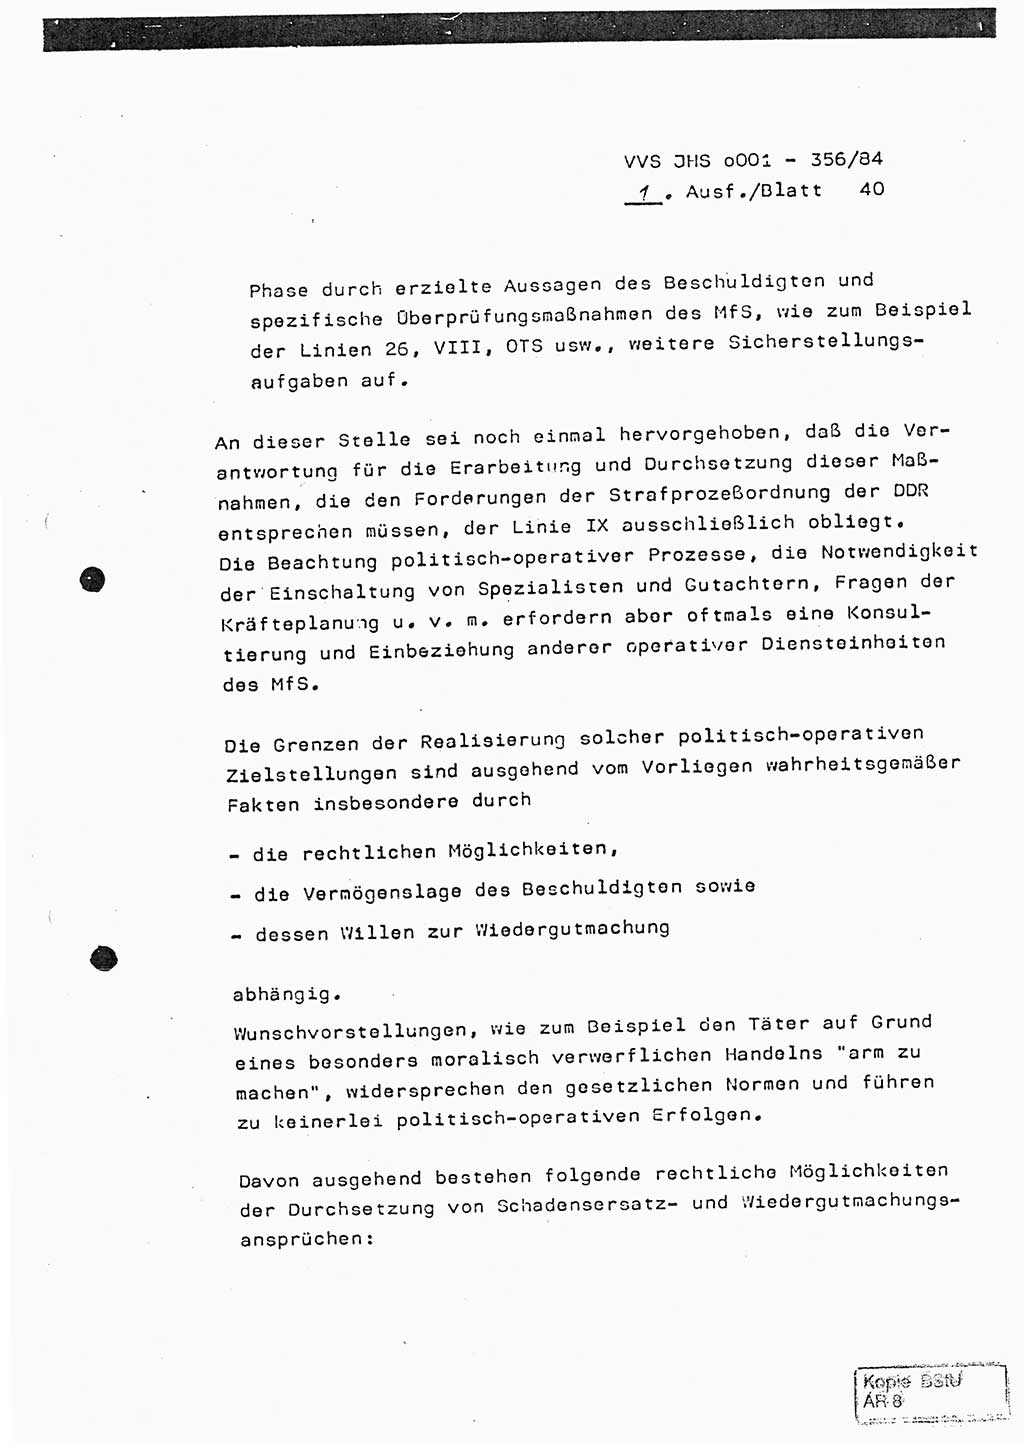 Diplomarbeit, Major Lutz Rahaus (HA Ⅸ/3), Ministerium für Staatssicherheit (MfS) [Deutsche Demokratische Republik (DDR)], Juristische Hochschule (JHS), Vertrauliche Verschlußsache (VVS) o001-356/84, Potsdam 1984, Seite 40 (Dipl.-Arb. MfS DDR JHS VVS o001-356/84 1984, S. 40)